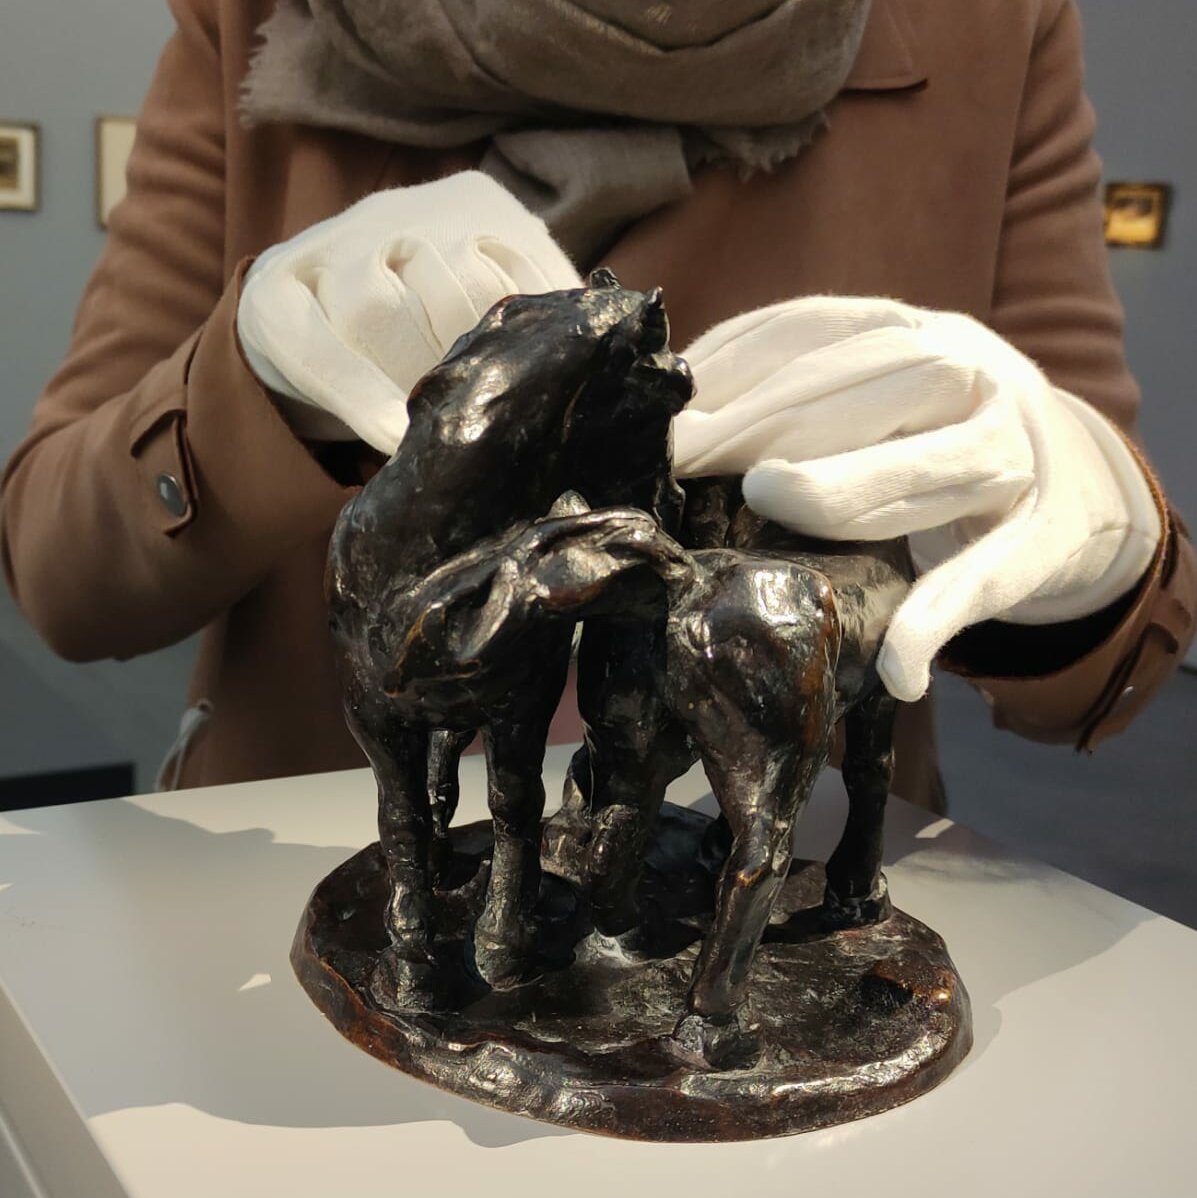 Abgebildet ist die Bronzeplastik "Zwei Pferde" von Franz Marc im Ausstellungsraum. Sie steht auf einem hellgrauen Sockel. Eine Person ertastet die Plastik mit weißen Baumwollhandschuhen. 